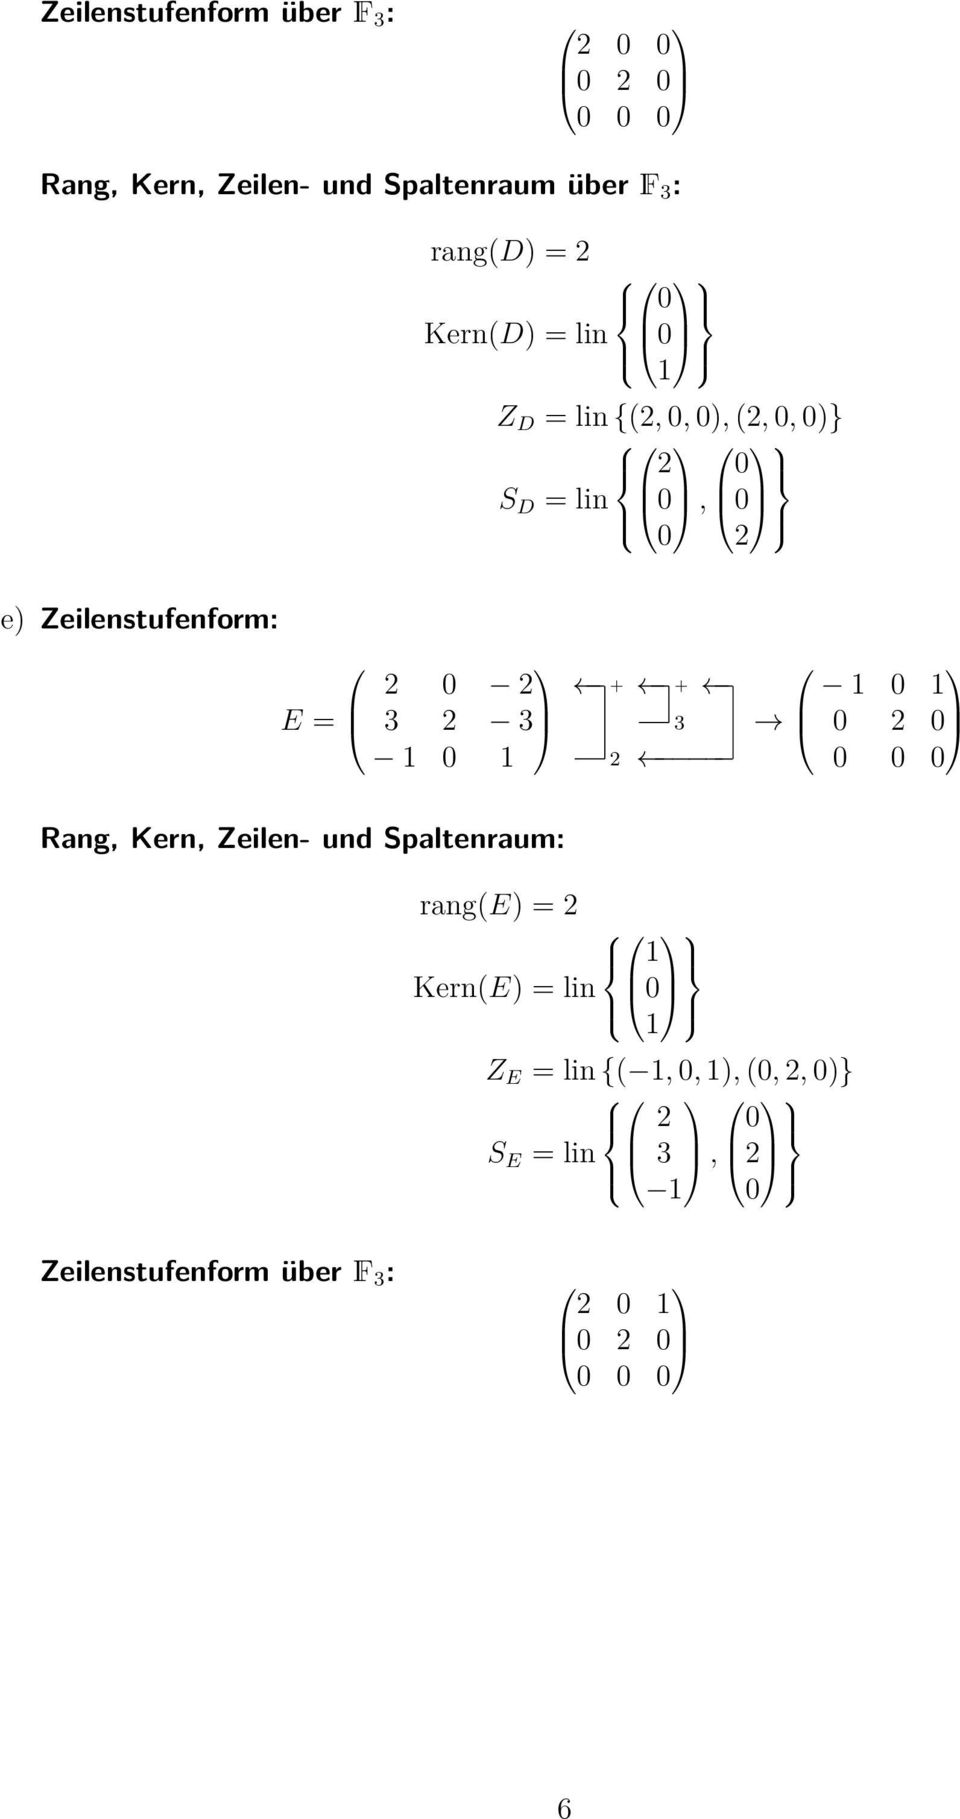 Zeilenstufenform: E = Rang Kern Zeilen- und Spaltenraum: rang(e)